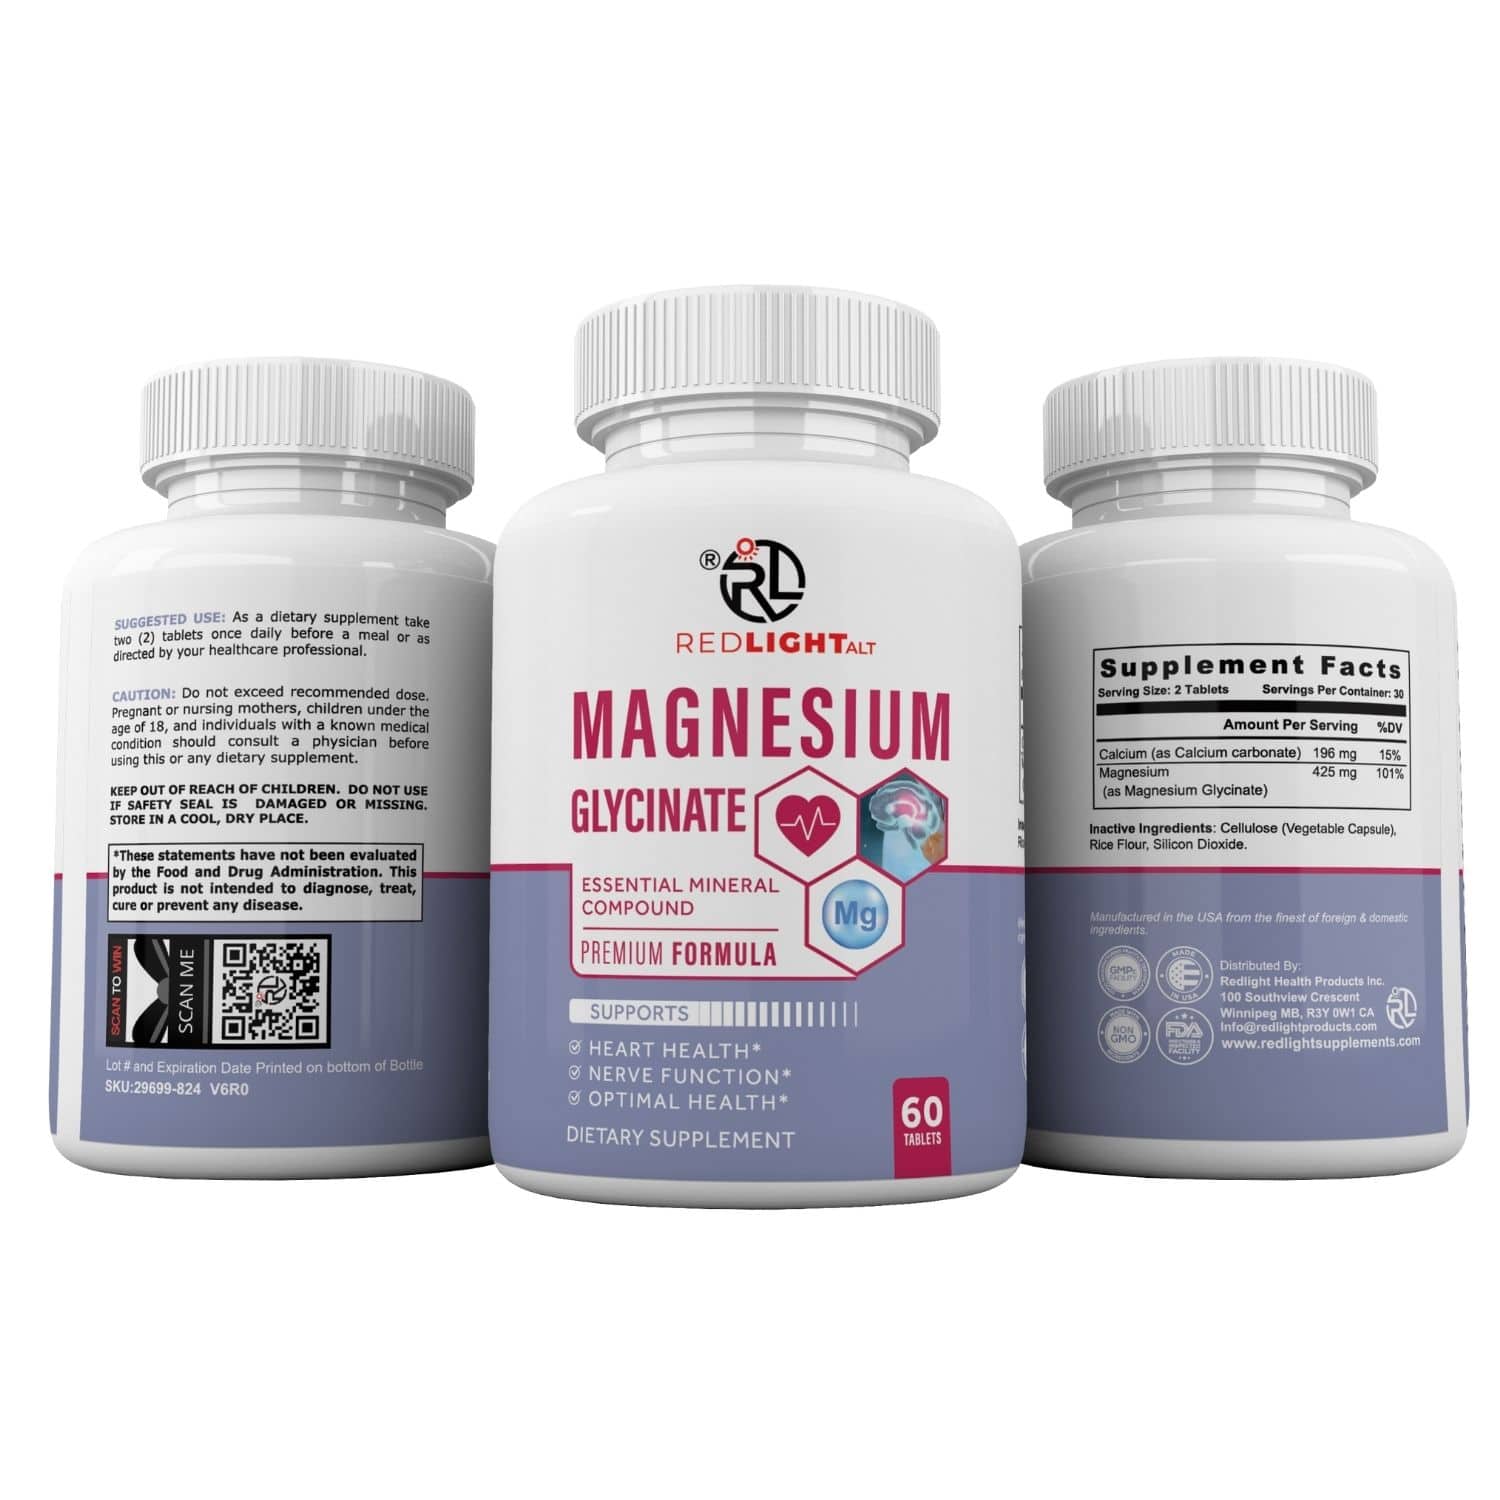 Redlight ALT pure magnesium glycinate capsules